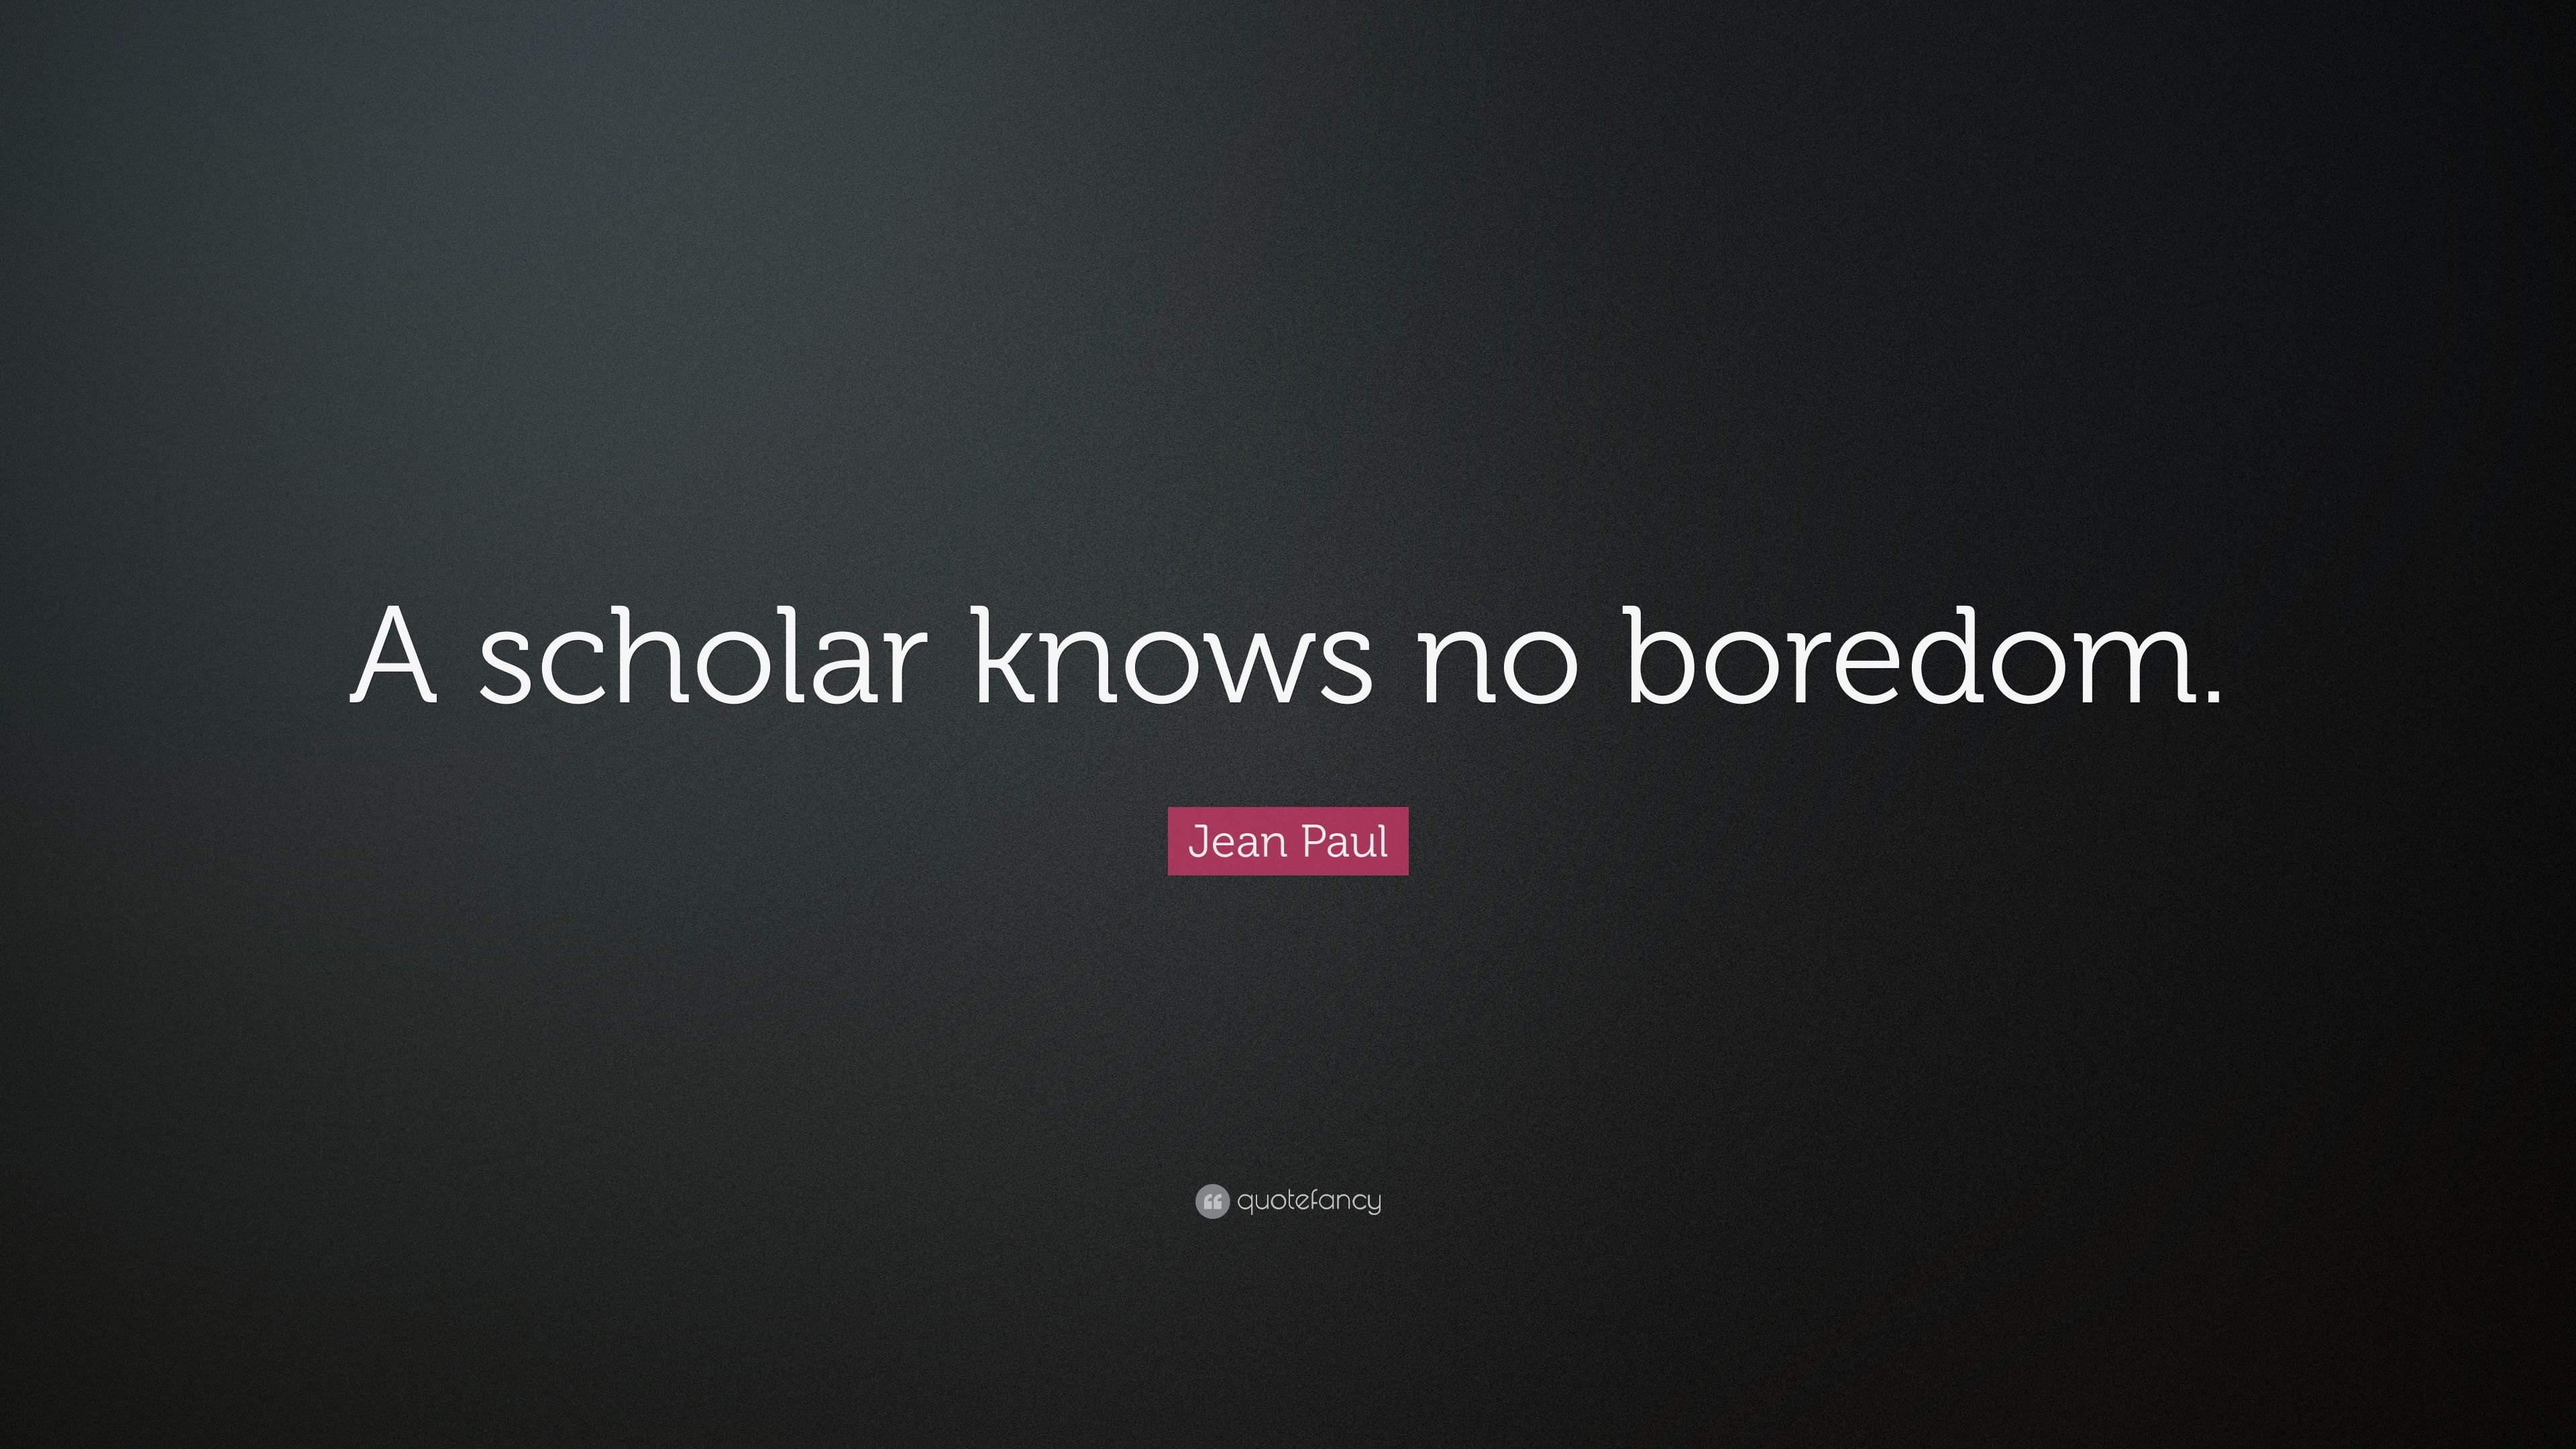 Jean Paul Quote: “A scholar knows no boredom.” (7 wallpaper)